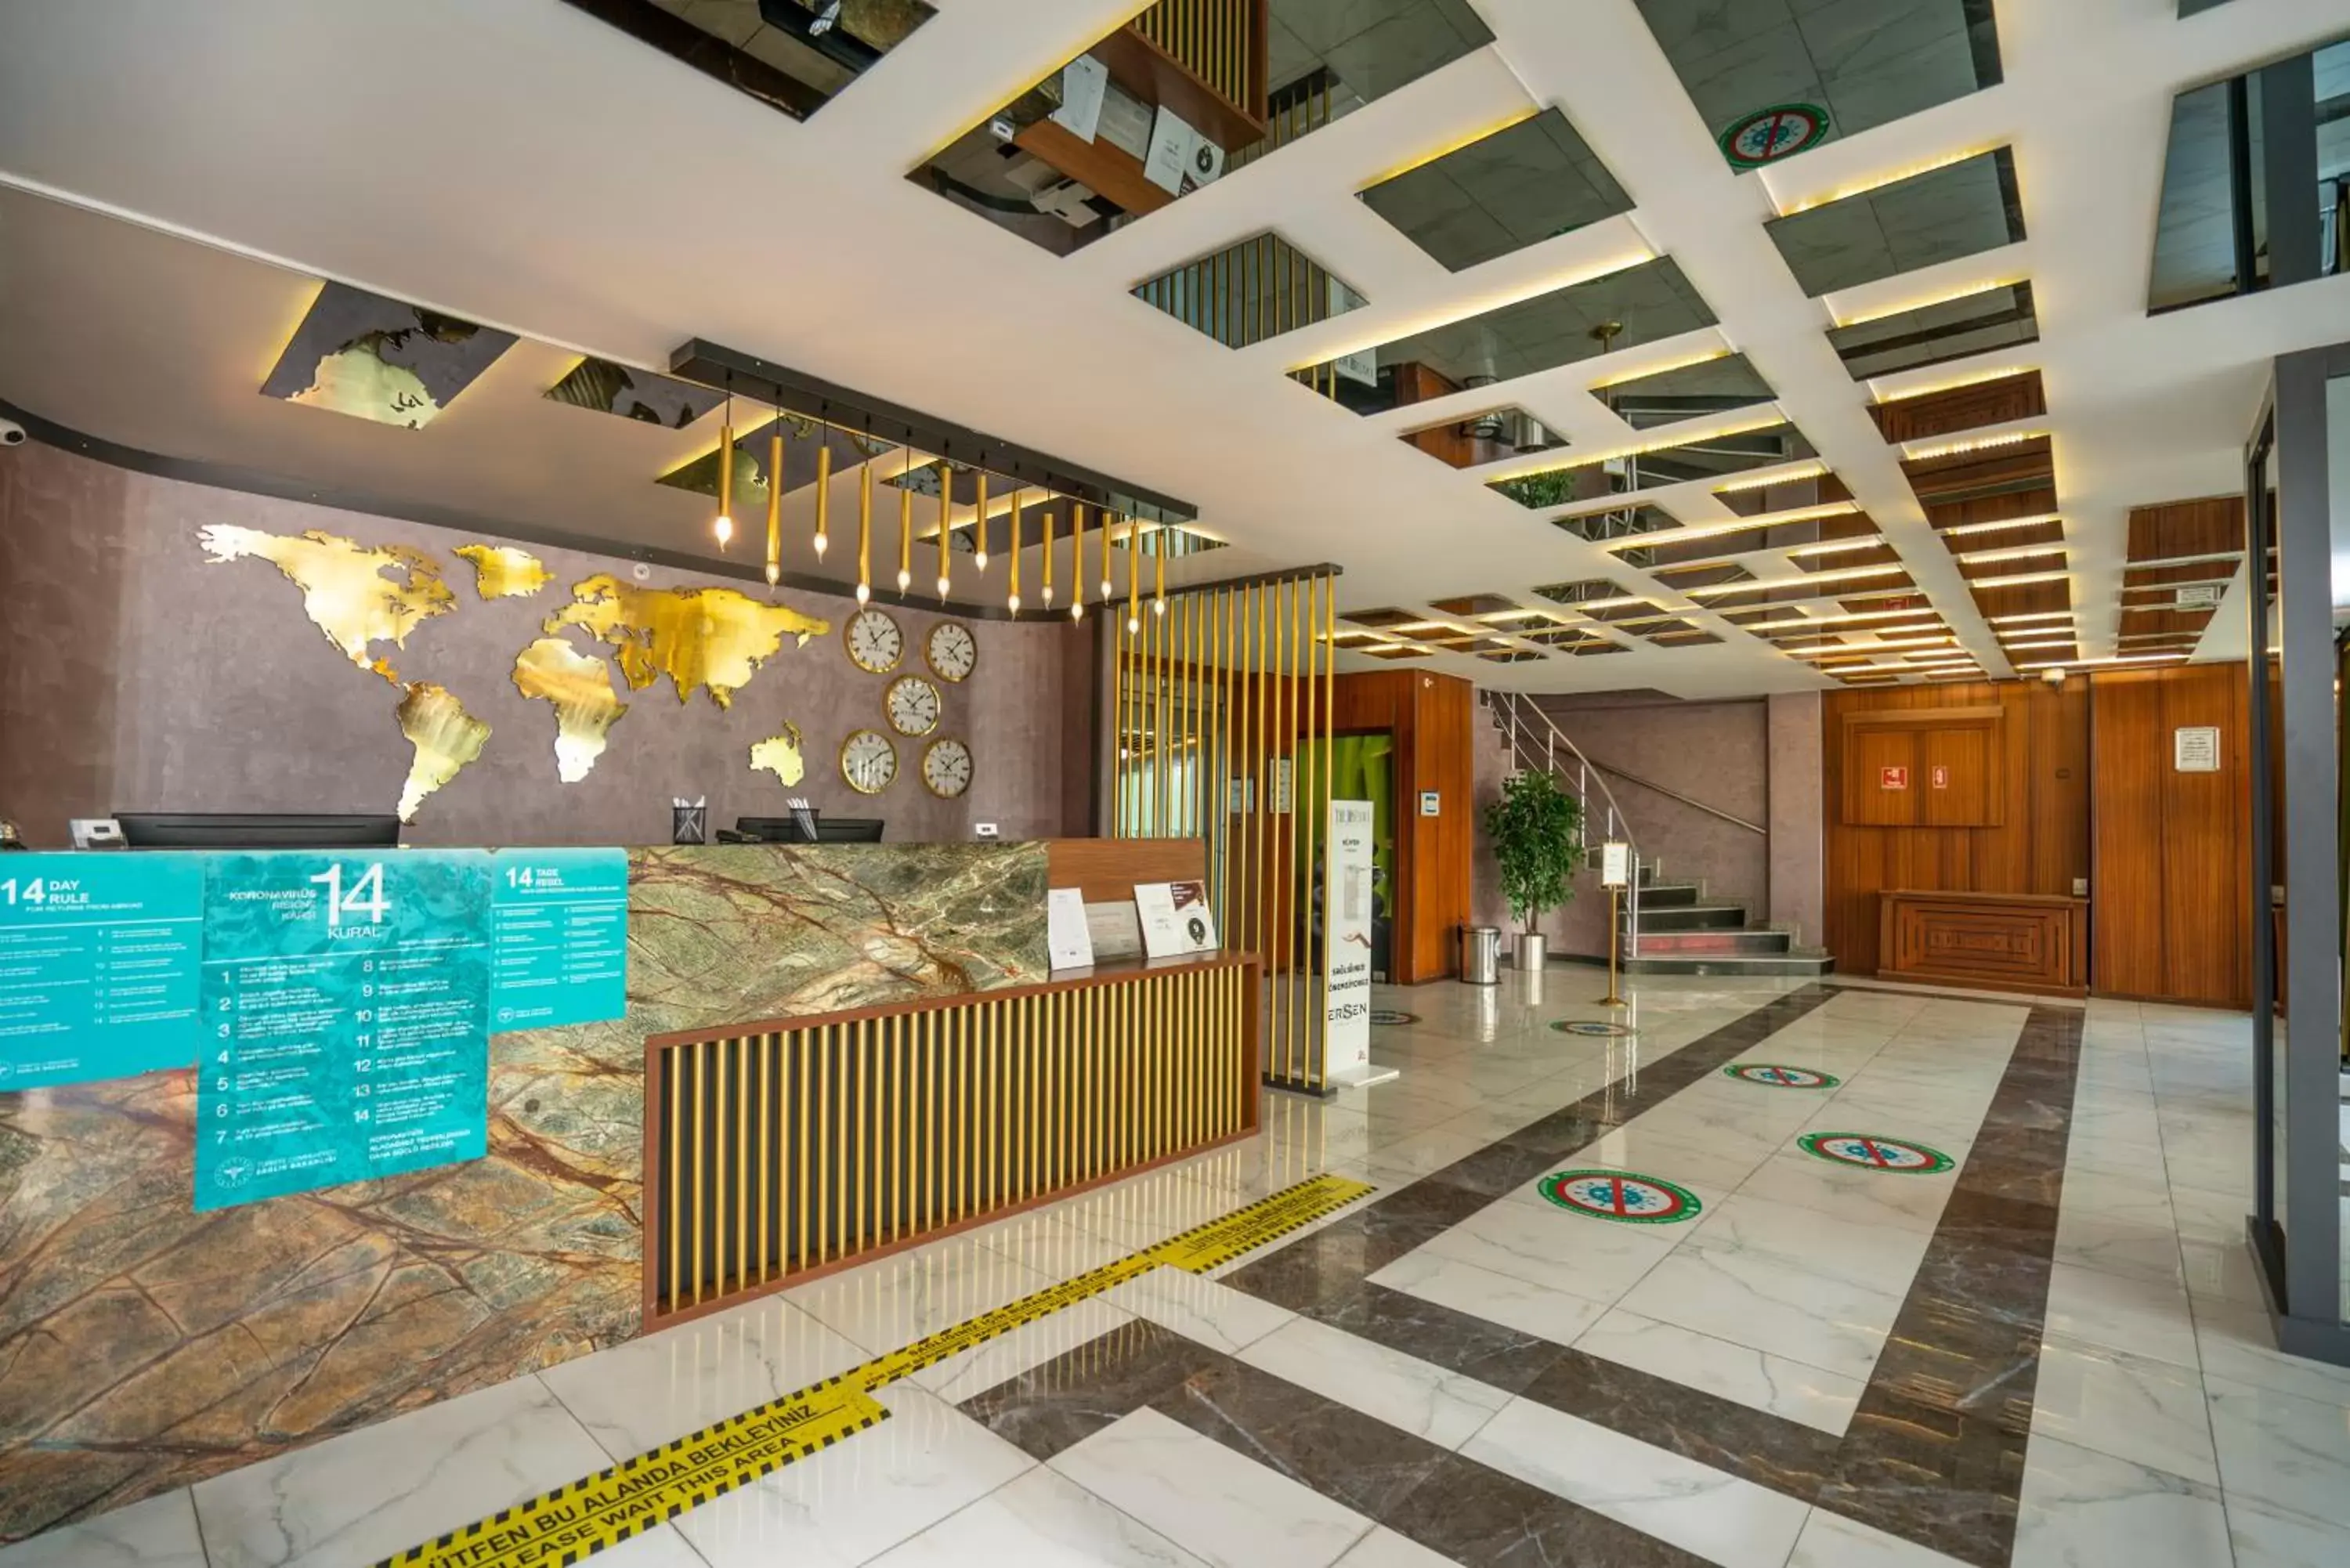 Lobby or reception, Lobby/Reception in The Bostancı Otel